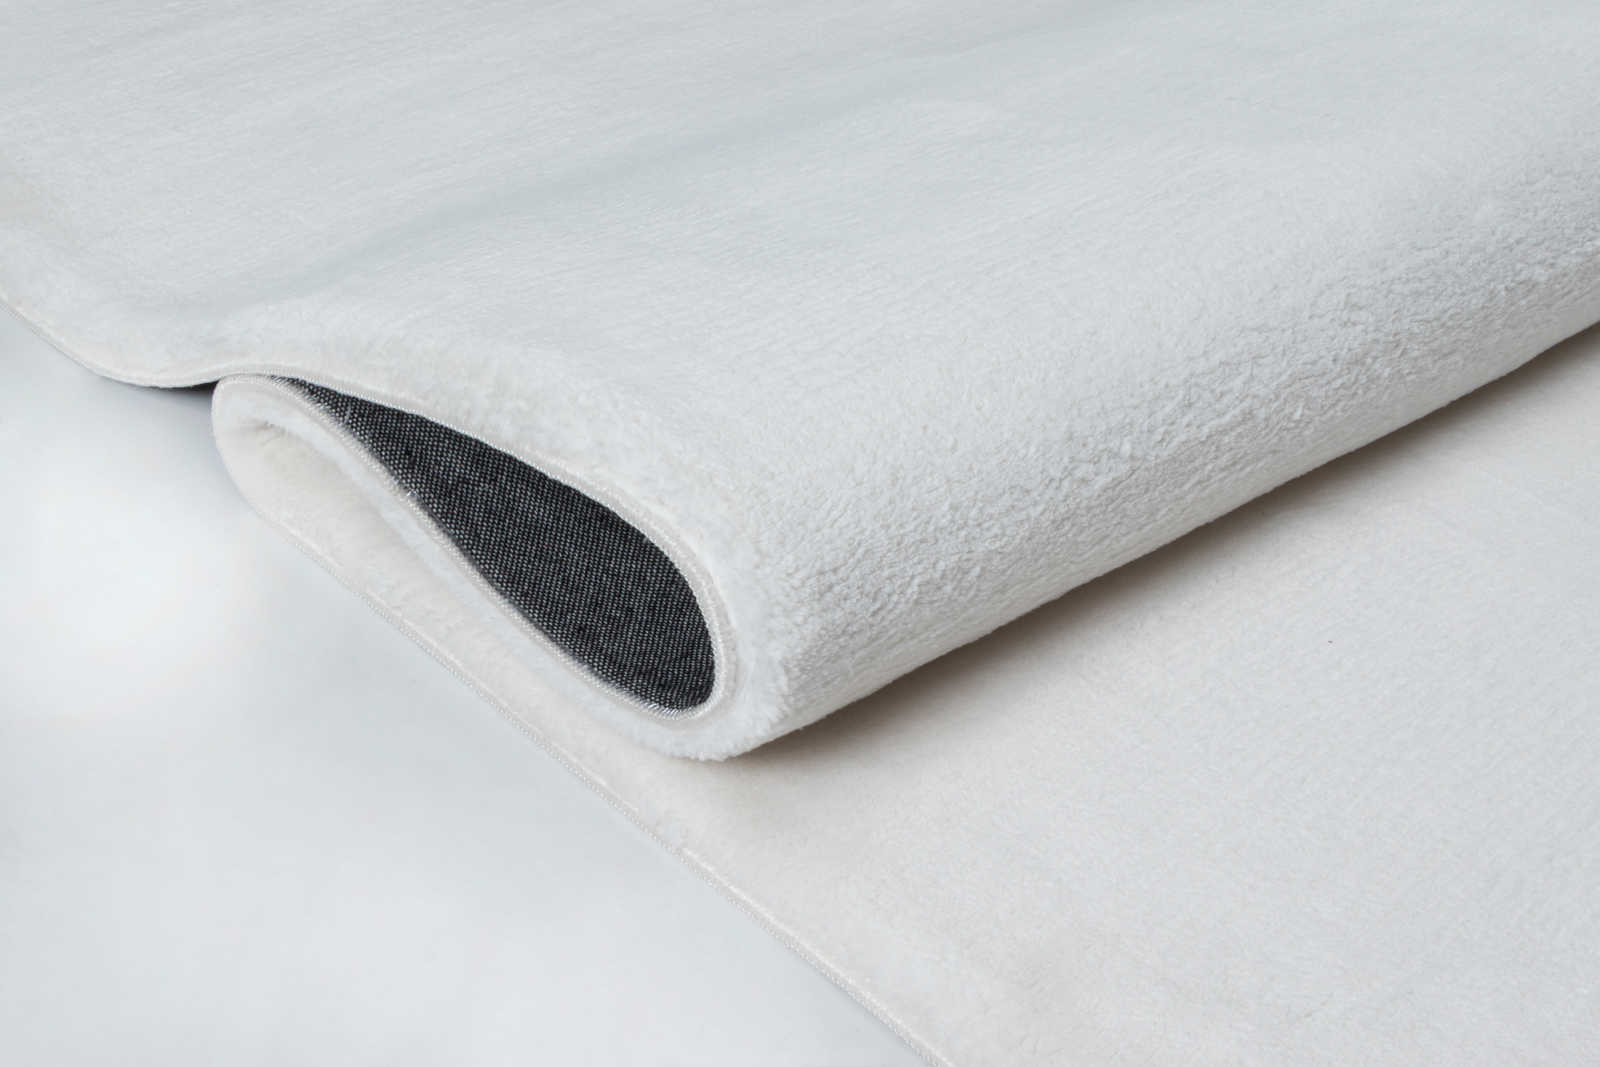             Pluizig hoogpolig tapijt in aangenaam crème - 110 x 60 cm
        